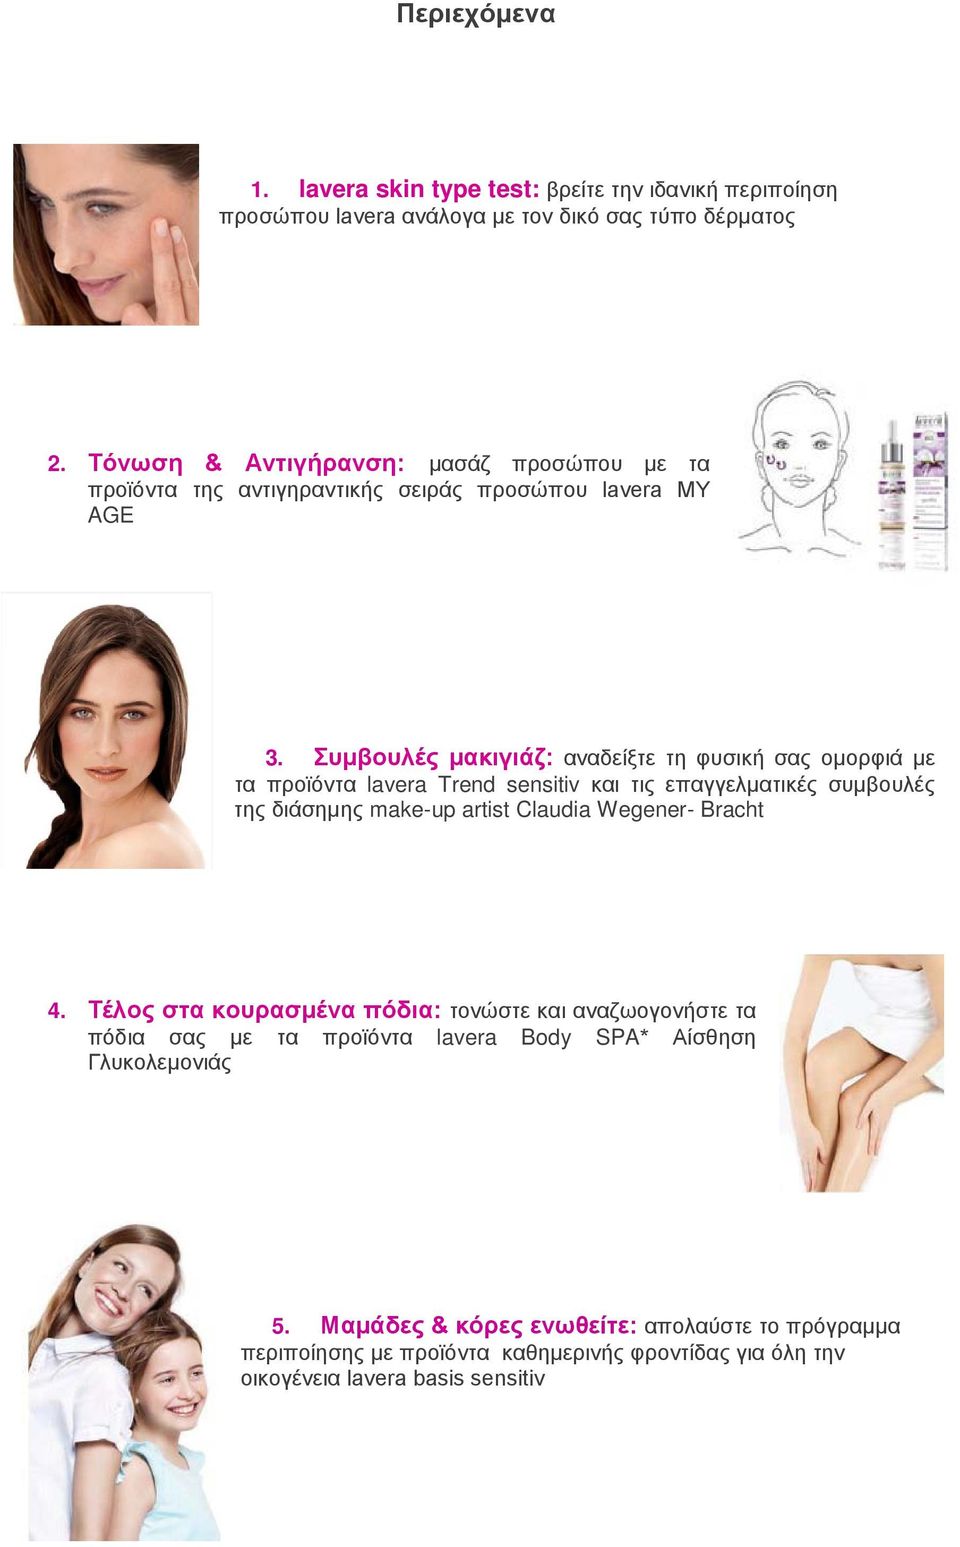 Συμβουλές μακιγιάζ: αναδείξτε τη φυσική σας ομορφιά με τα προϊόντα lavera Trend sensitiv και τις επαγγελματικές συμβουλές της διάσημης make-up artist Claudia Wegener-